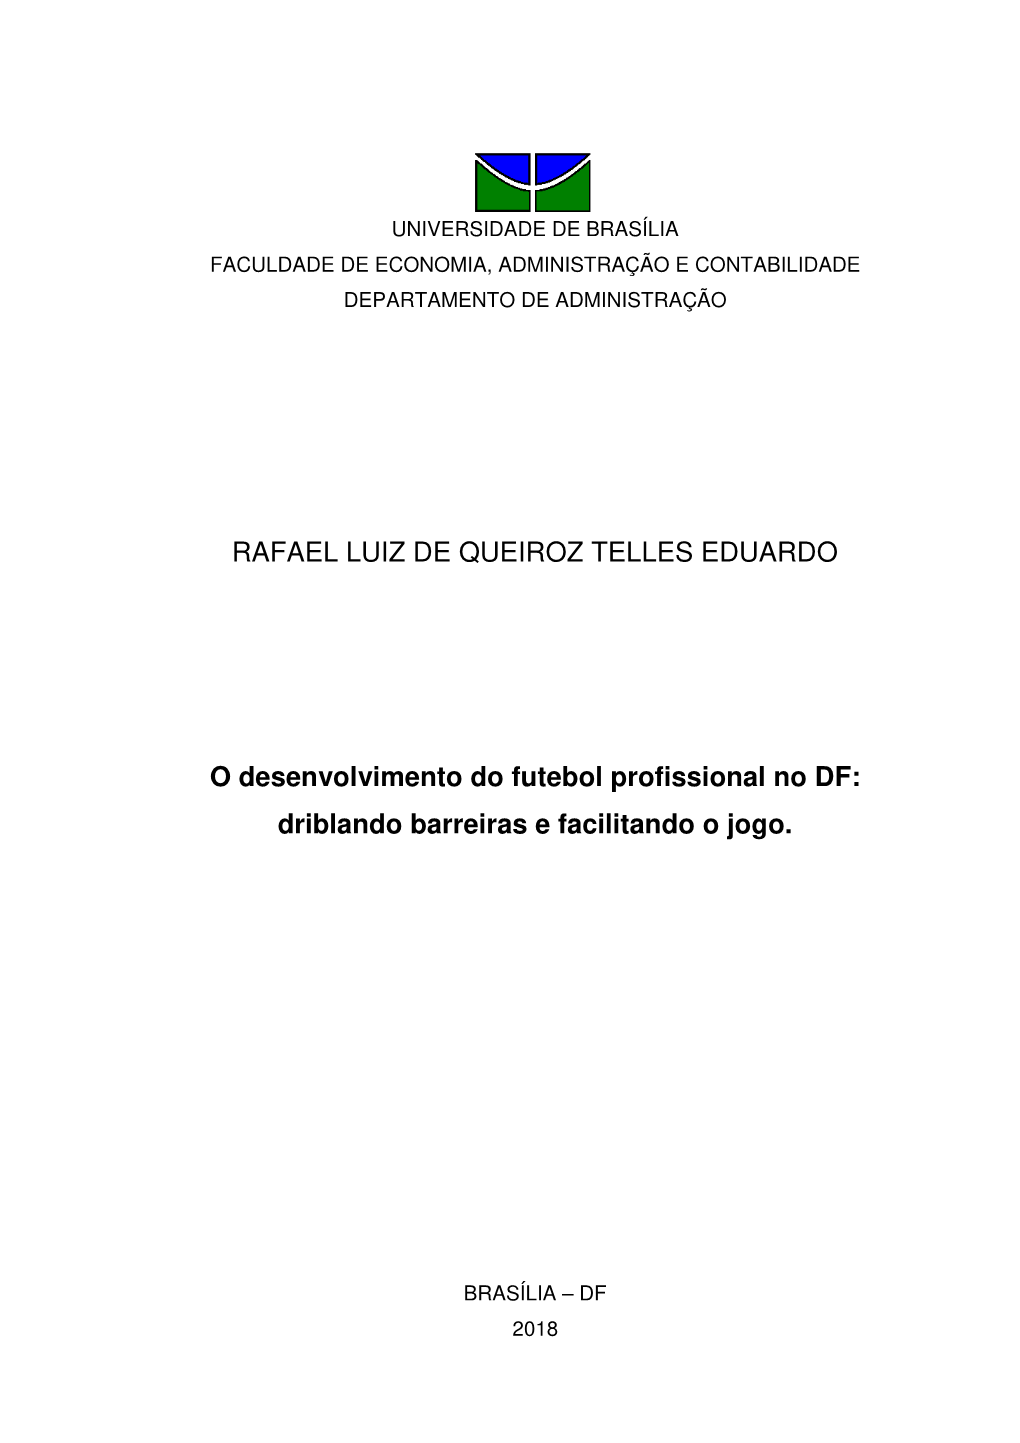 Monografia Apresentada Ao Departamento De Administração Como Requisito Parcial À Obtenção Do Título De Bacharel Em Administração